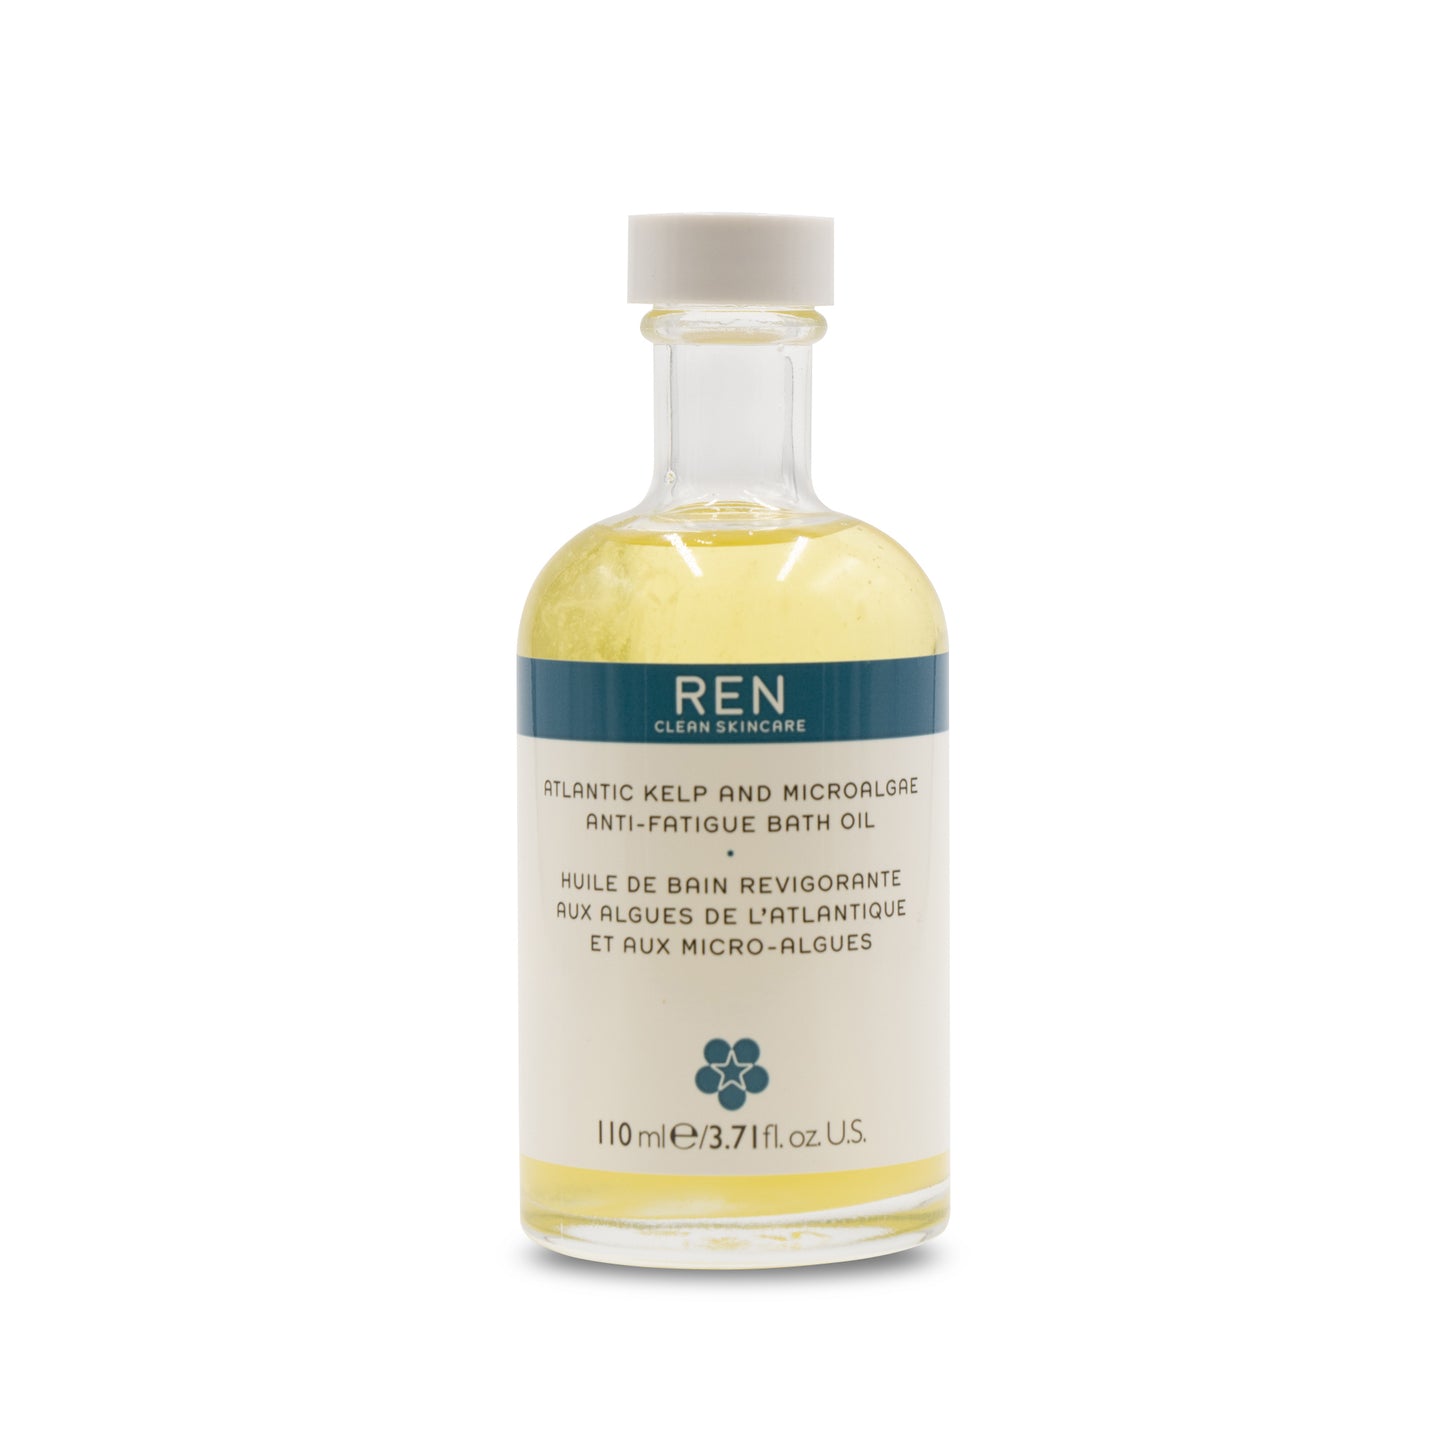 Atlantic Kelp and Microalgae Anti-Fatigue Bath Oil 110 ml Ren Clean Skincare